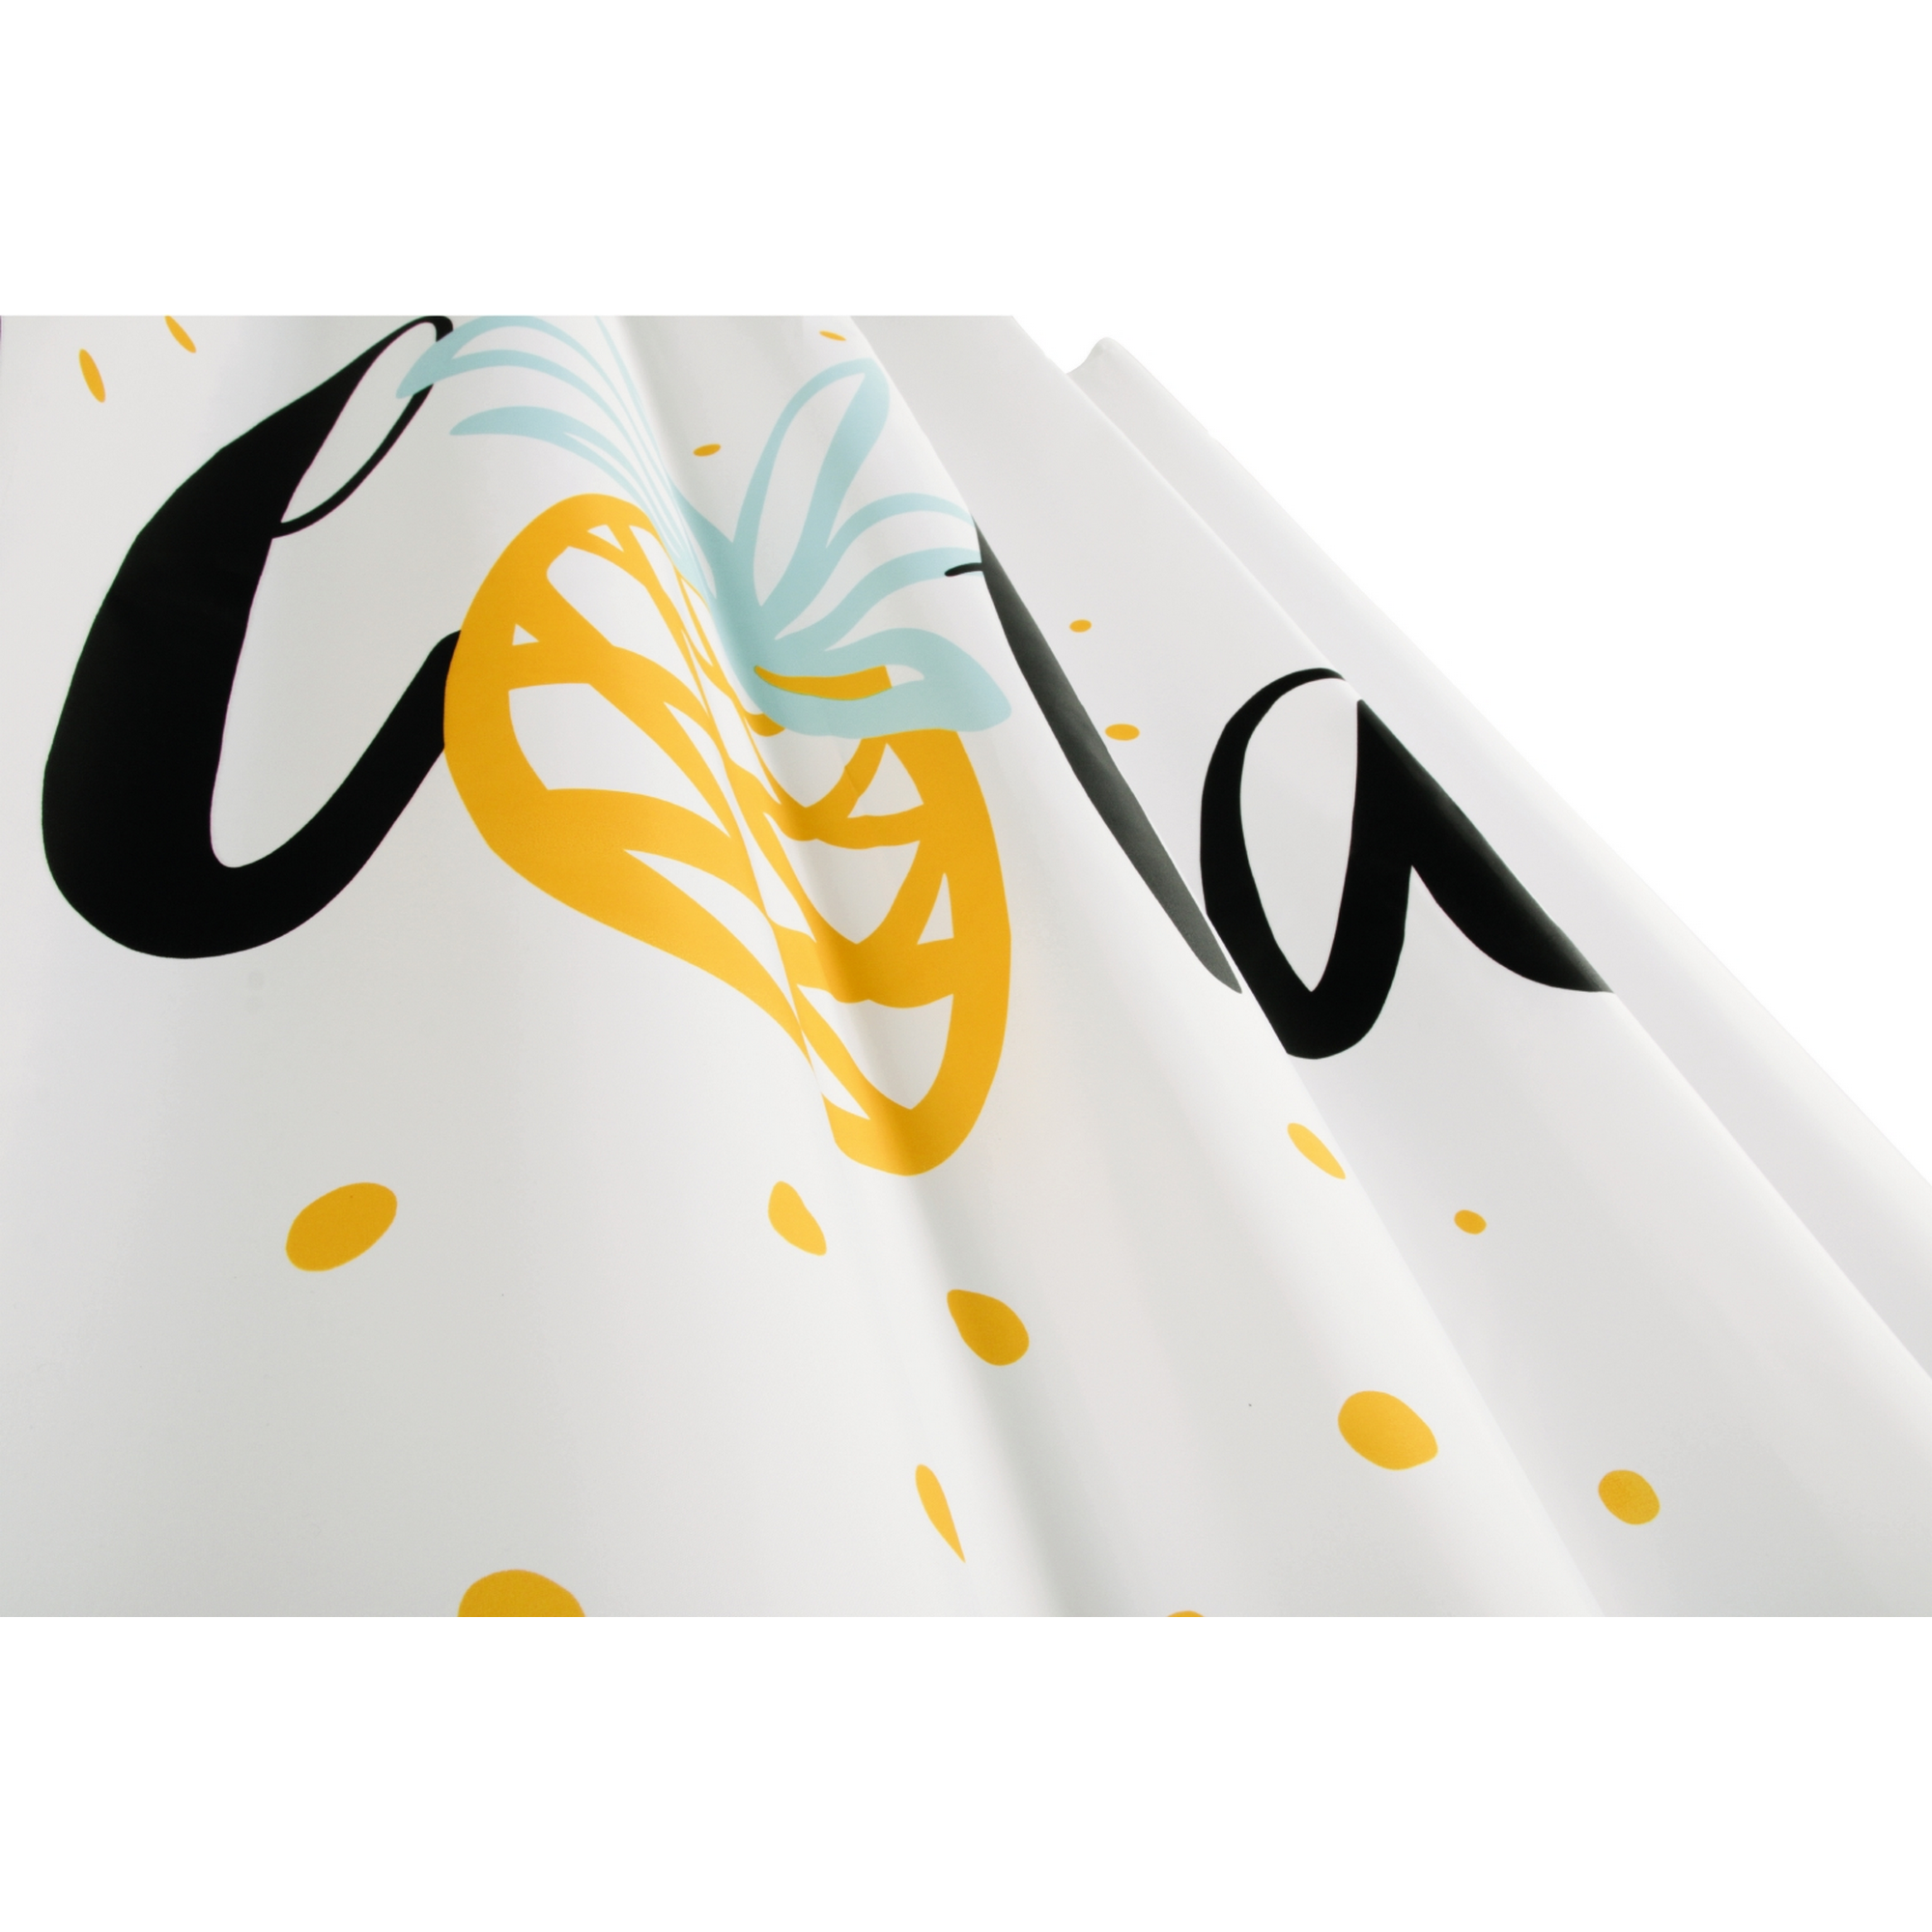 Duschvorhang 'Luau' Textil, mit Aloha-Print 180 x 200 cm + product picture